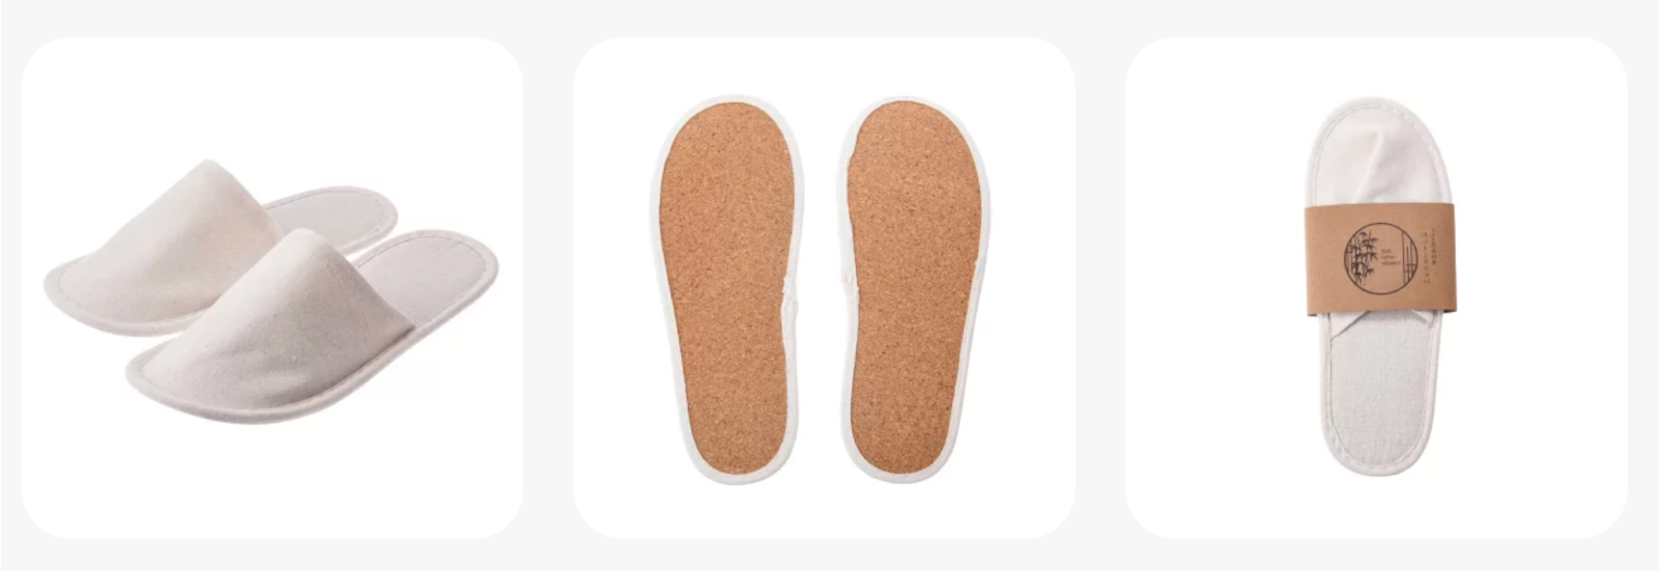 コルクくずを再利用したコットンスリッパ 『SUS cotton slippers』